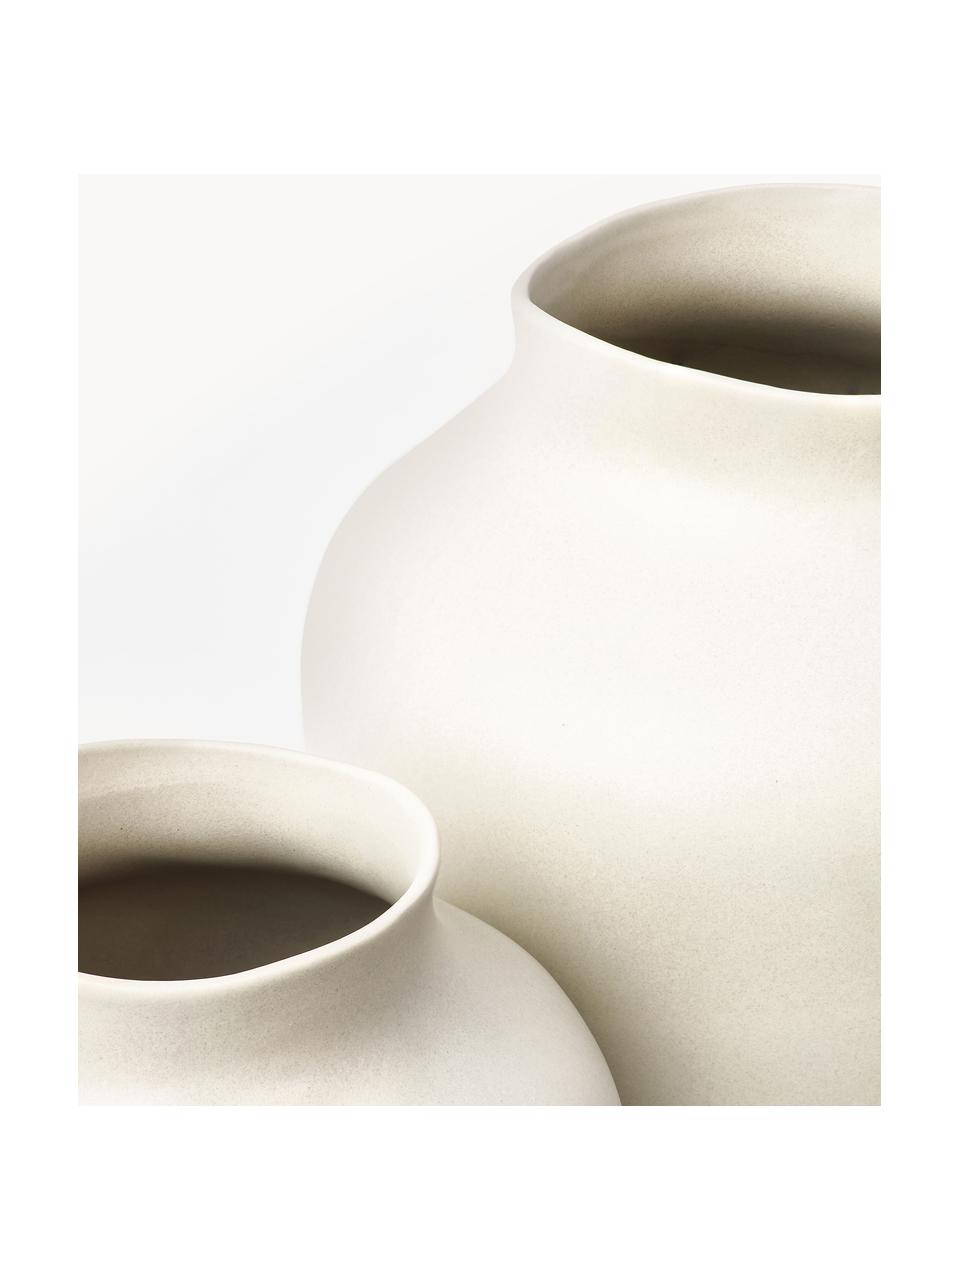 Handgefertigte Vase Latona, verschiedene Größen, Steingut, Cremeweiß, Ø 21 x H 30 cm